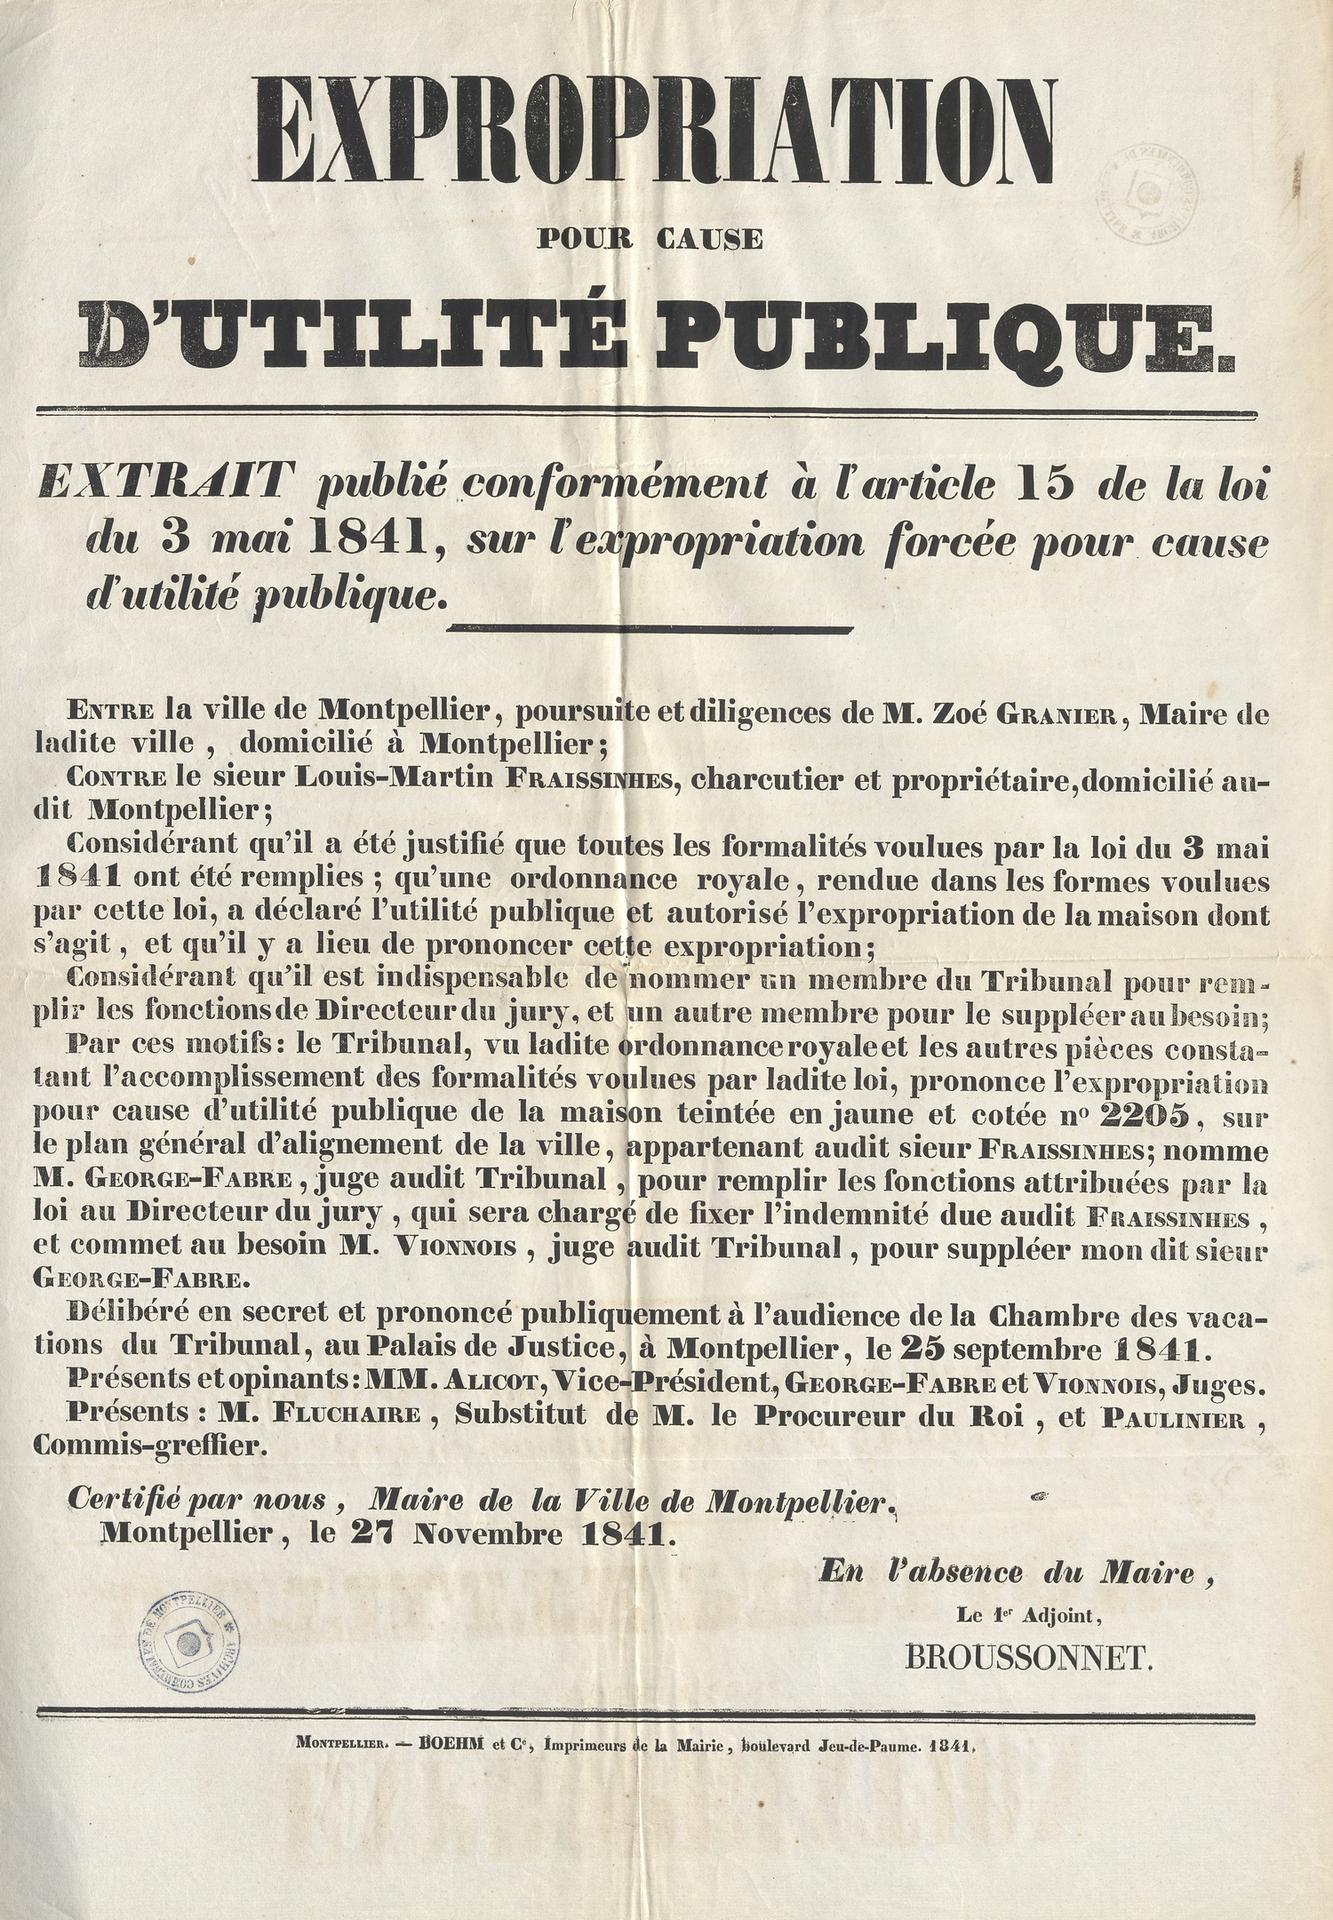 Arrêté expropriations, 27 novembre 1841. AMM, série M